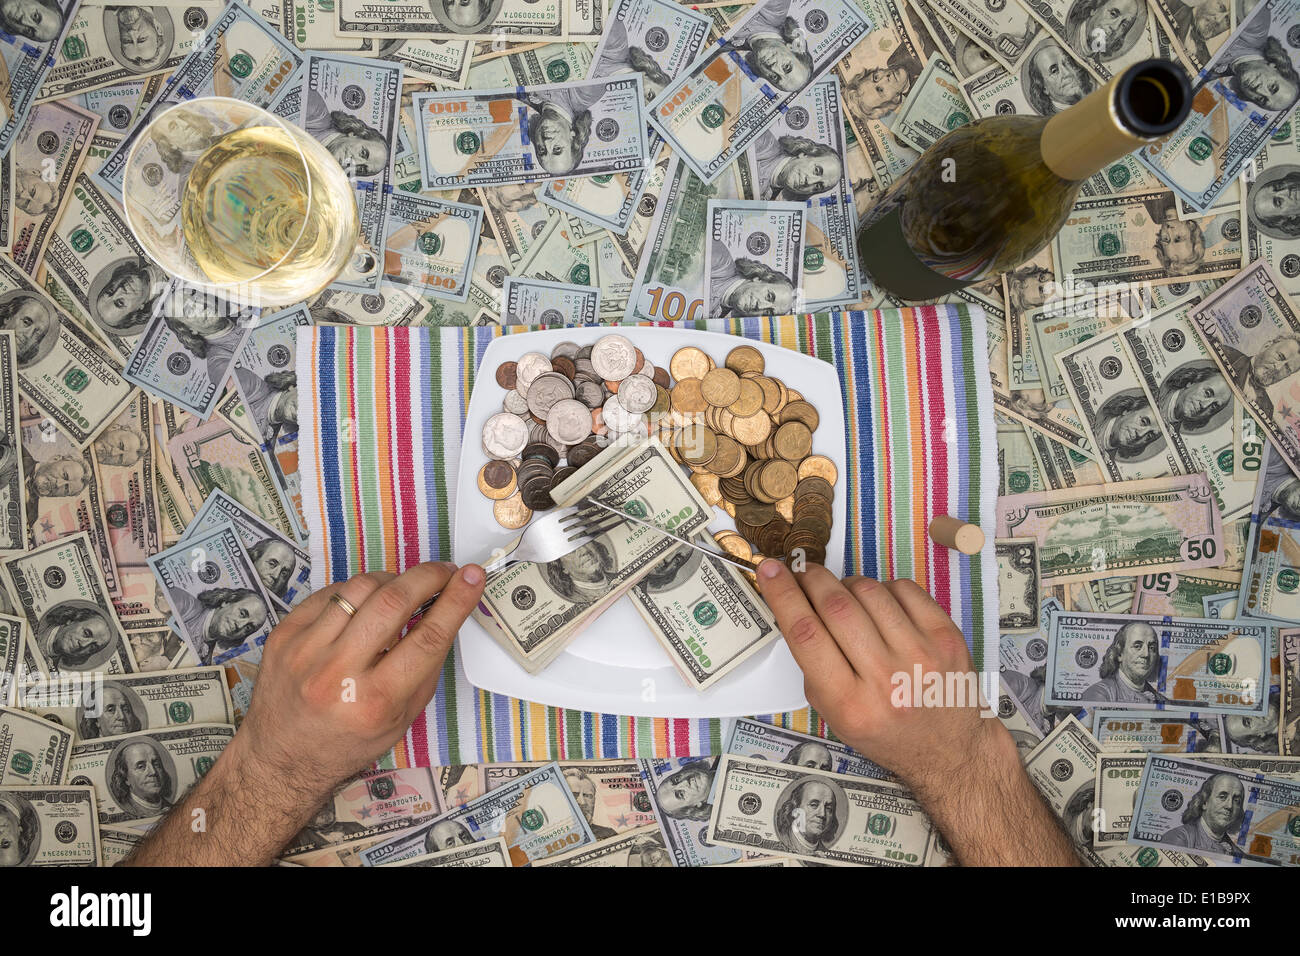 Image conceptuelle d'un homme de manger de l'argent grâce à l'extravagance avec une vue de dessus de lui assis à la table couverte de 100 dollar Banque D'Images